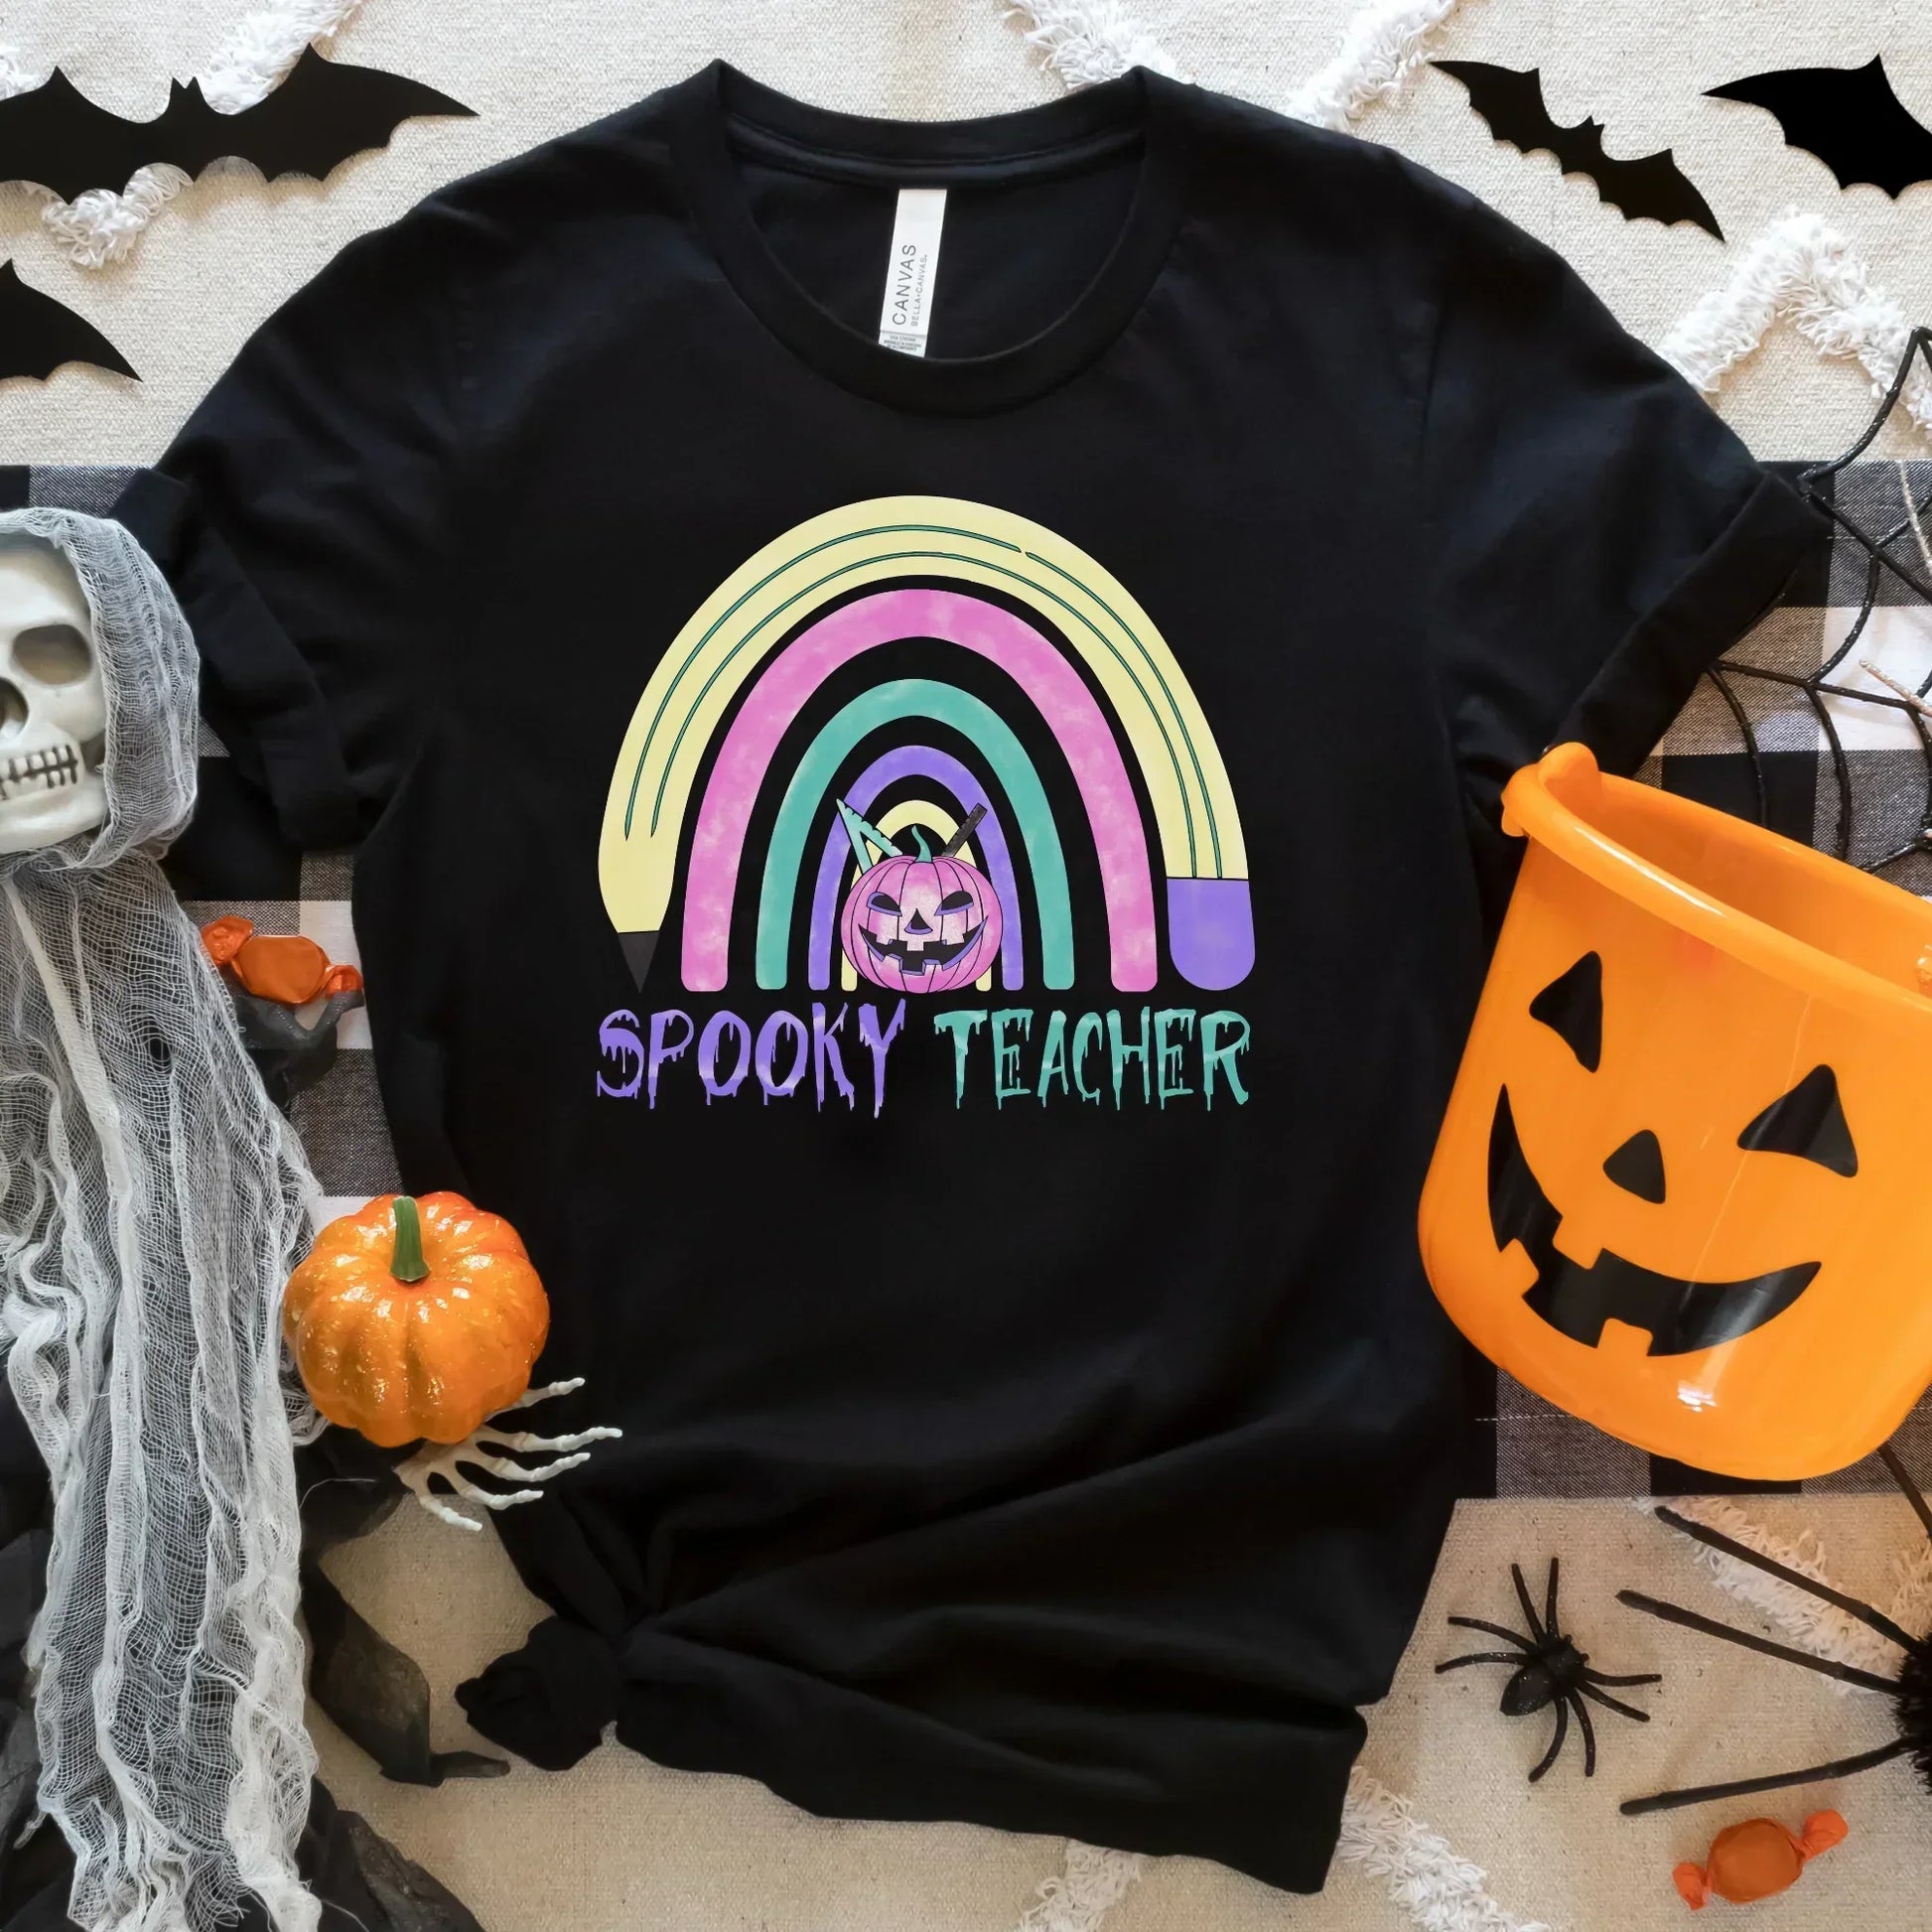 Halloween Teacher Shirt, Spooky Teacher Halloween Ghost Shirt